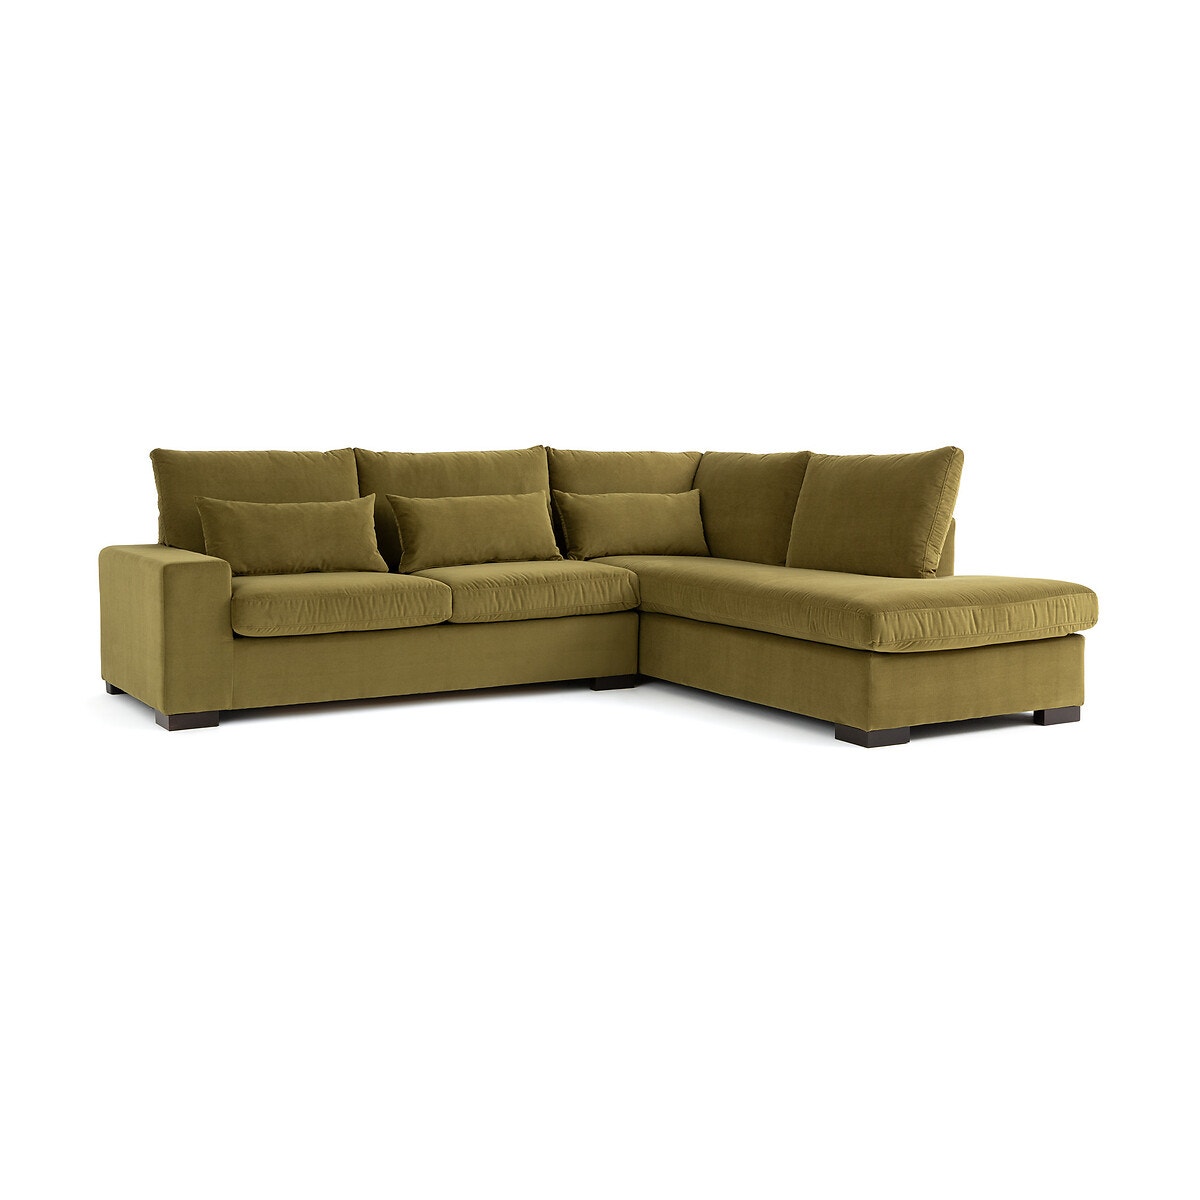 Σπίτι > Έπιπλα > Καθιστικό > Καναπέδες > Γωνιακοί καναπέδες Γωνιακός καναπές από βελούδο με τεχνολογία Bultex Μ208xΠ245xΥ80cm